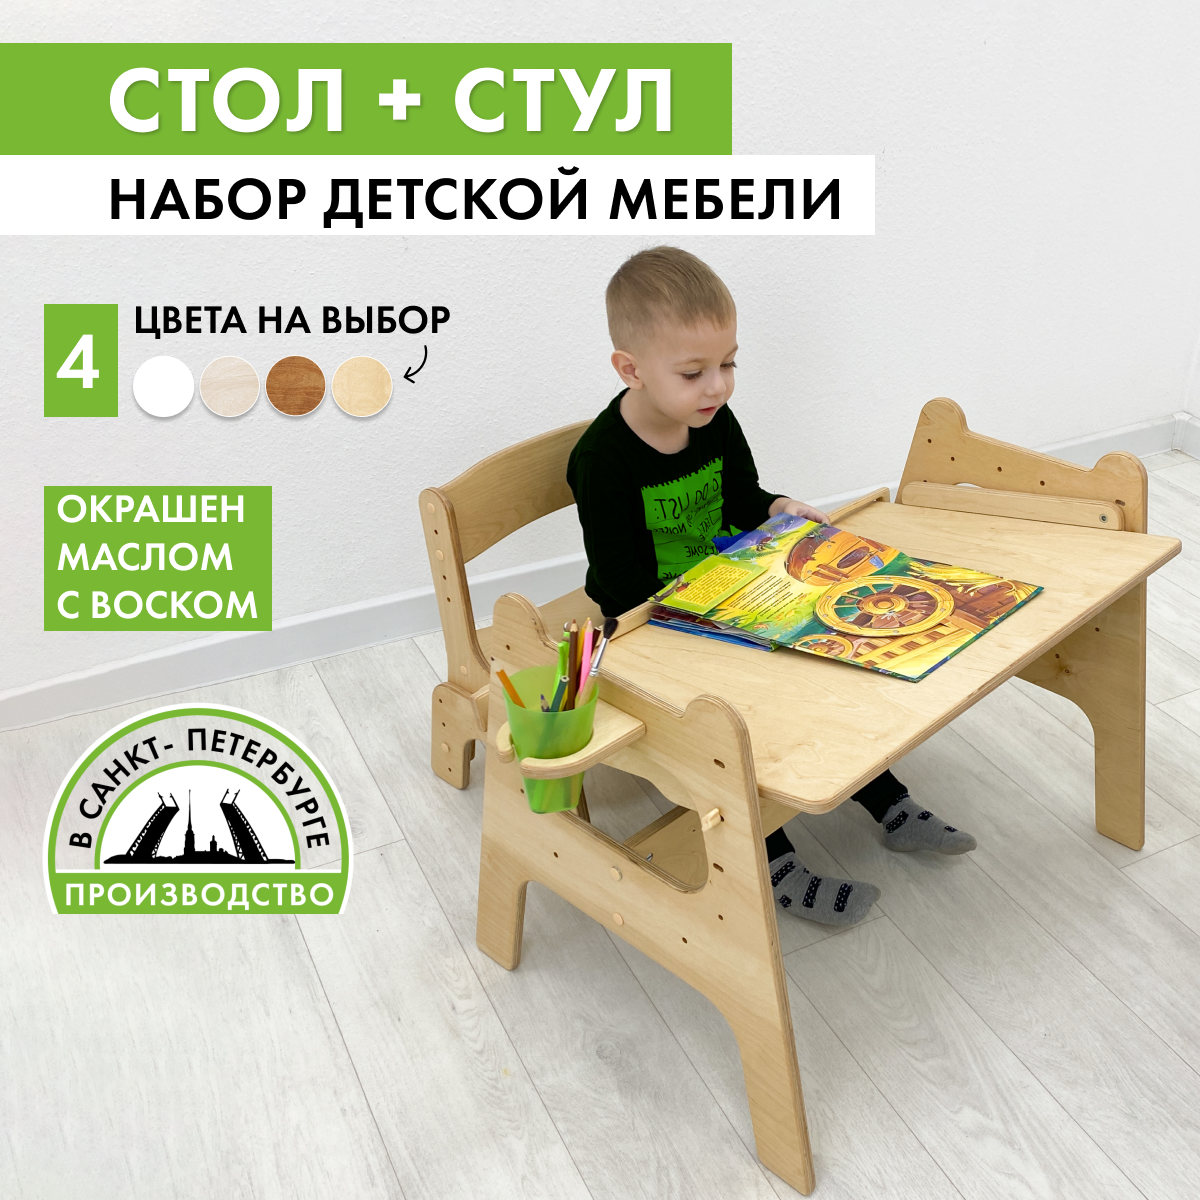 Стол детский Малышок и растущий стул, прозрачное масло